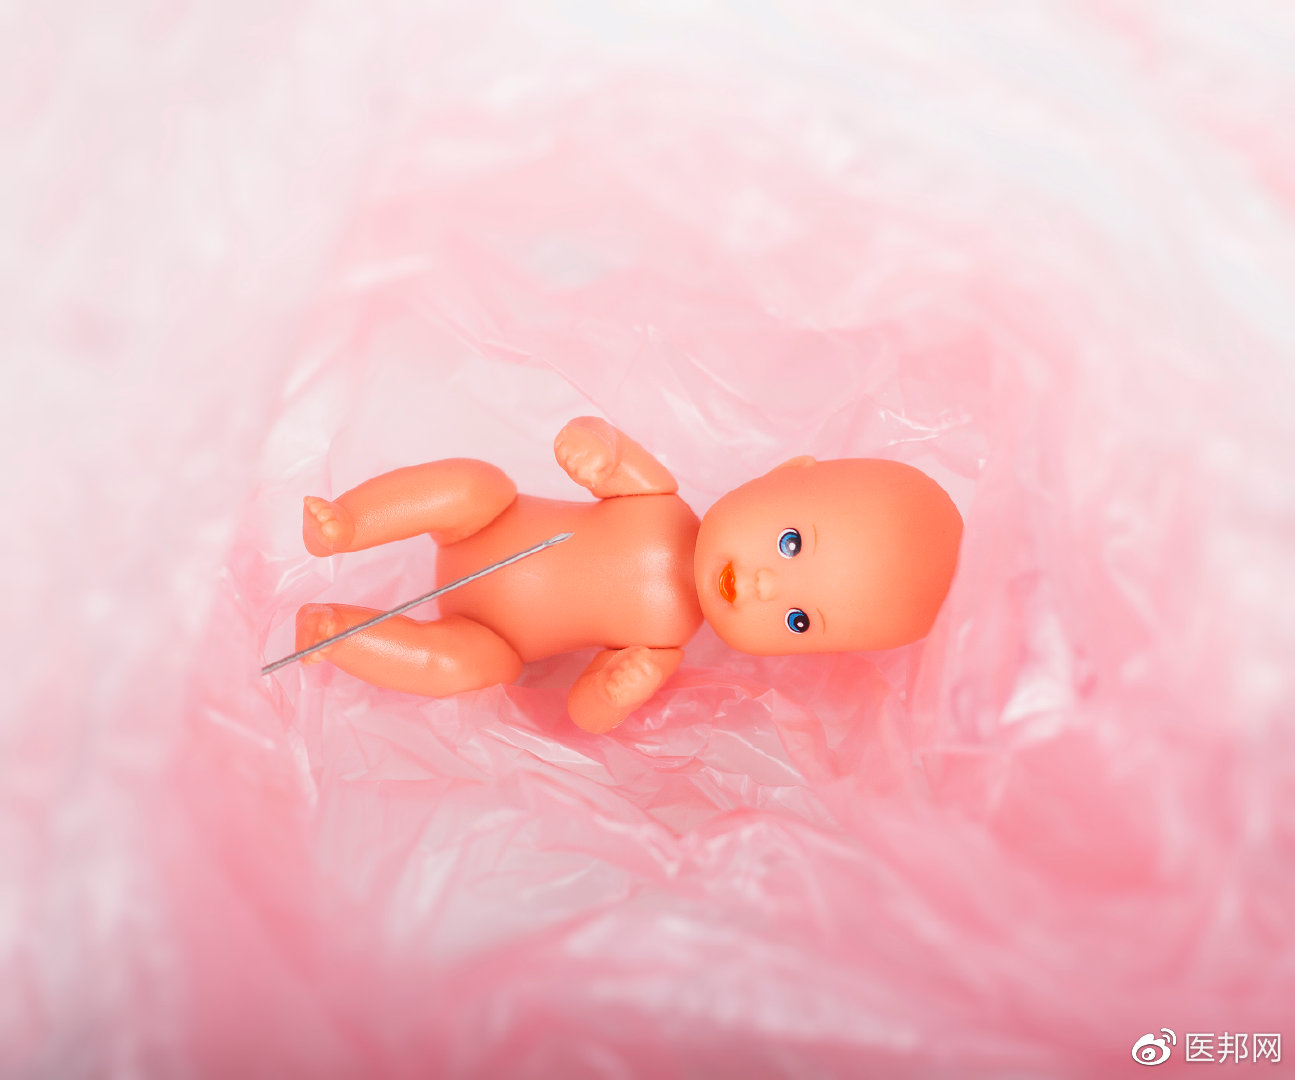 十月怀胎只为一朝分娩——提出和解决问题能力